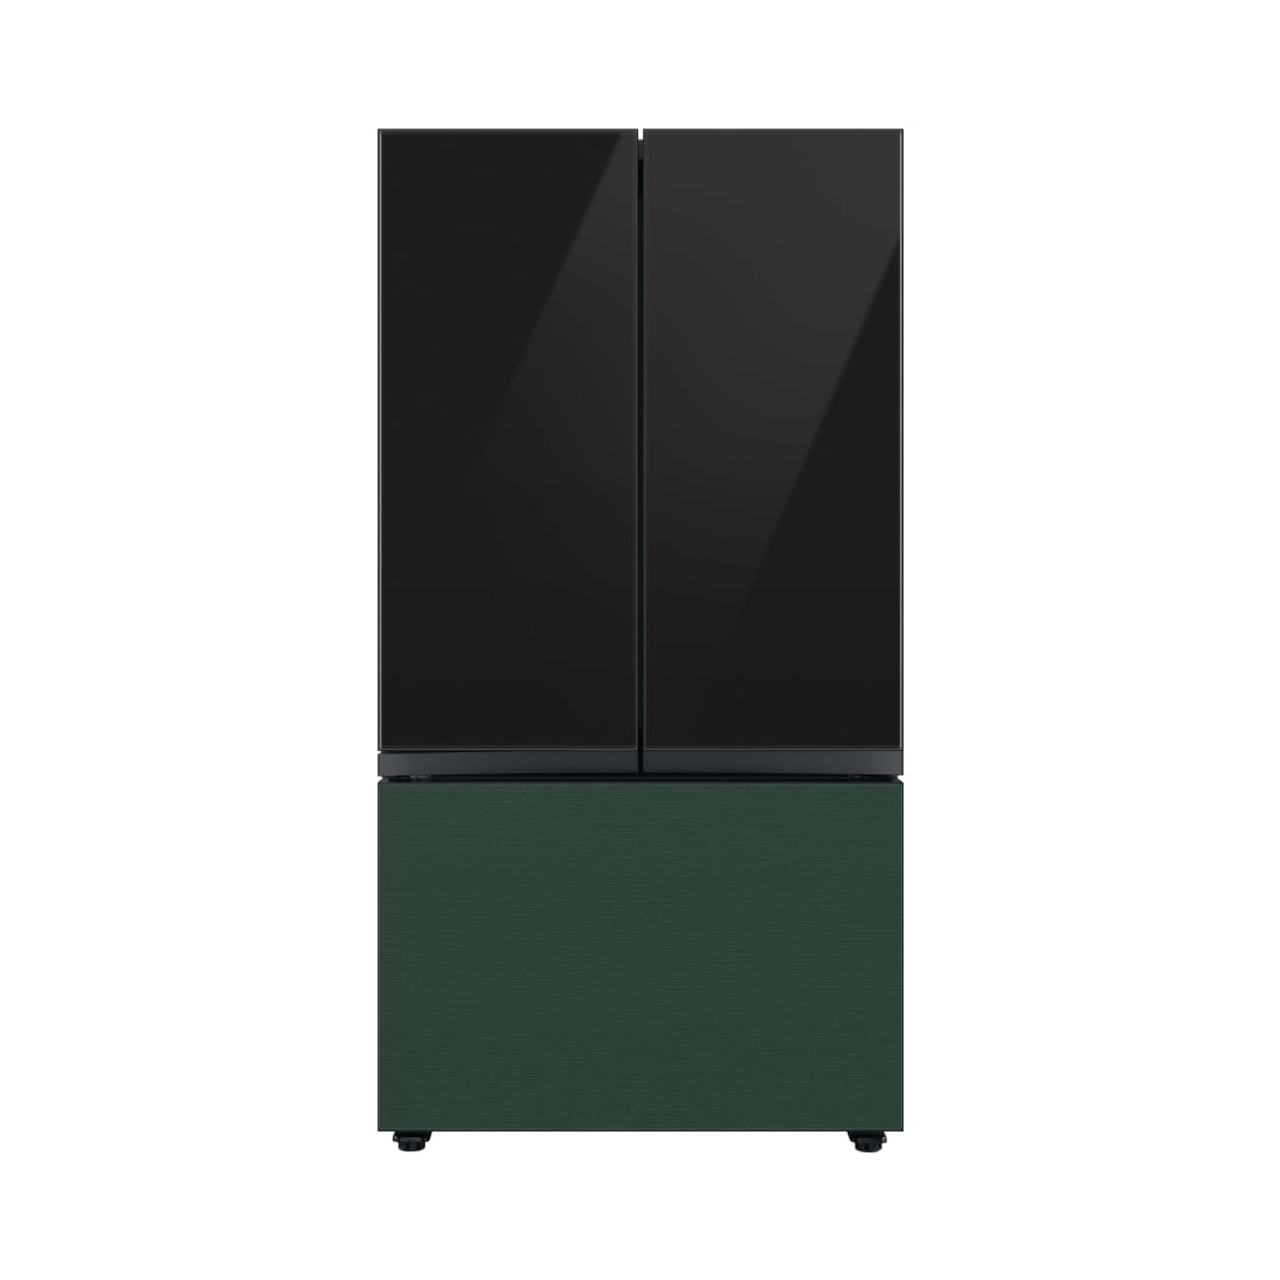 Samsung BESPOKE 3-Door French Door Bottom Panel  in Emerald Green Steel